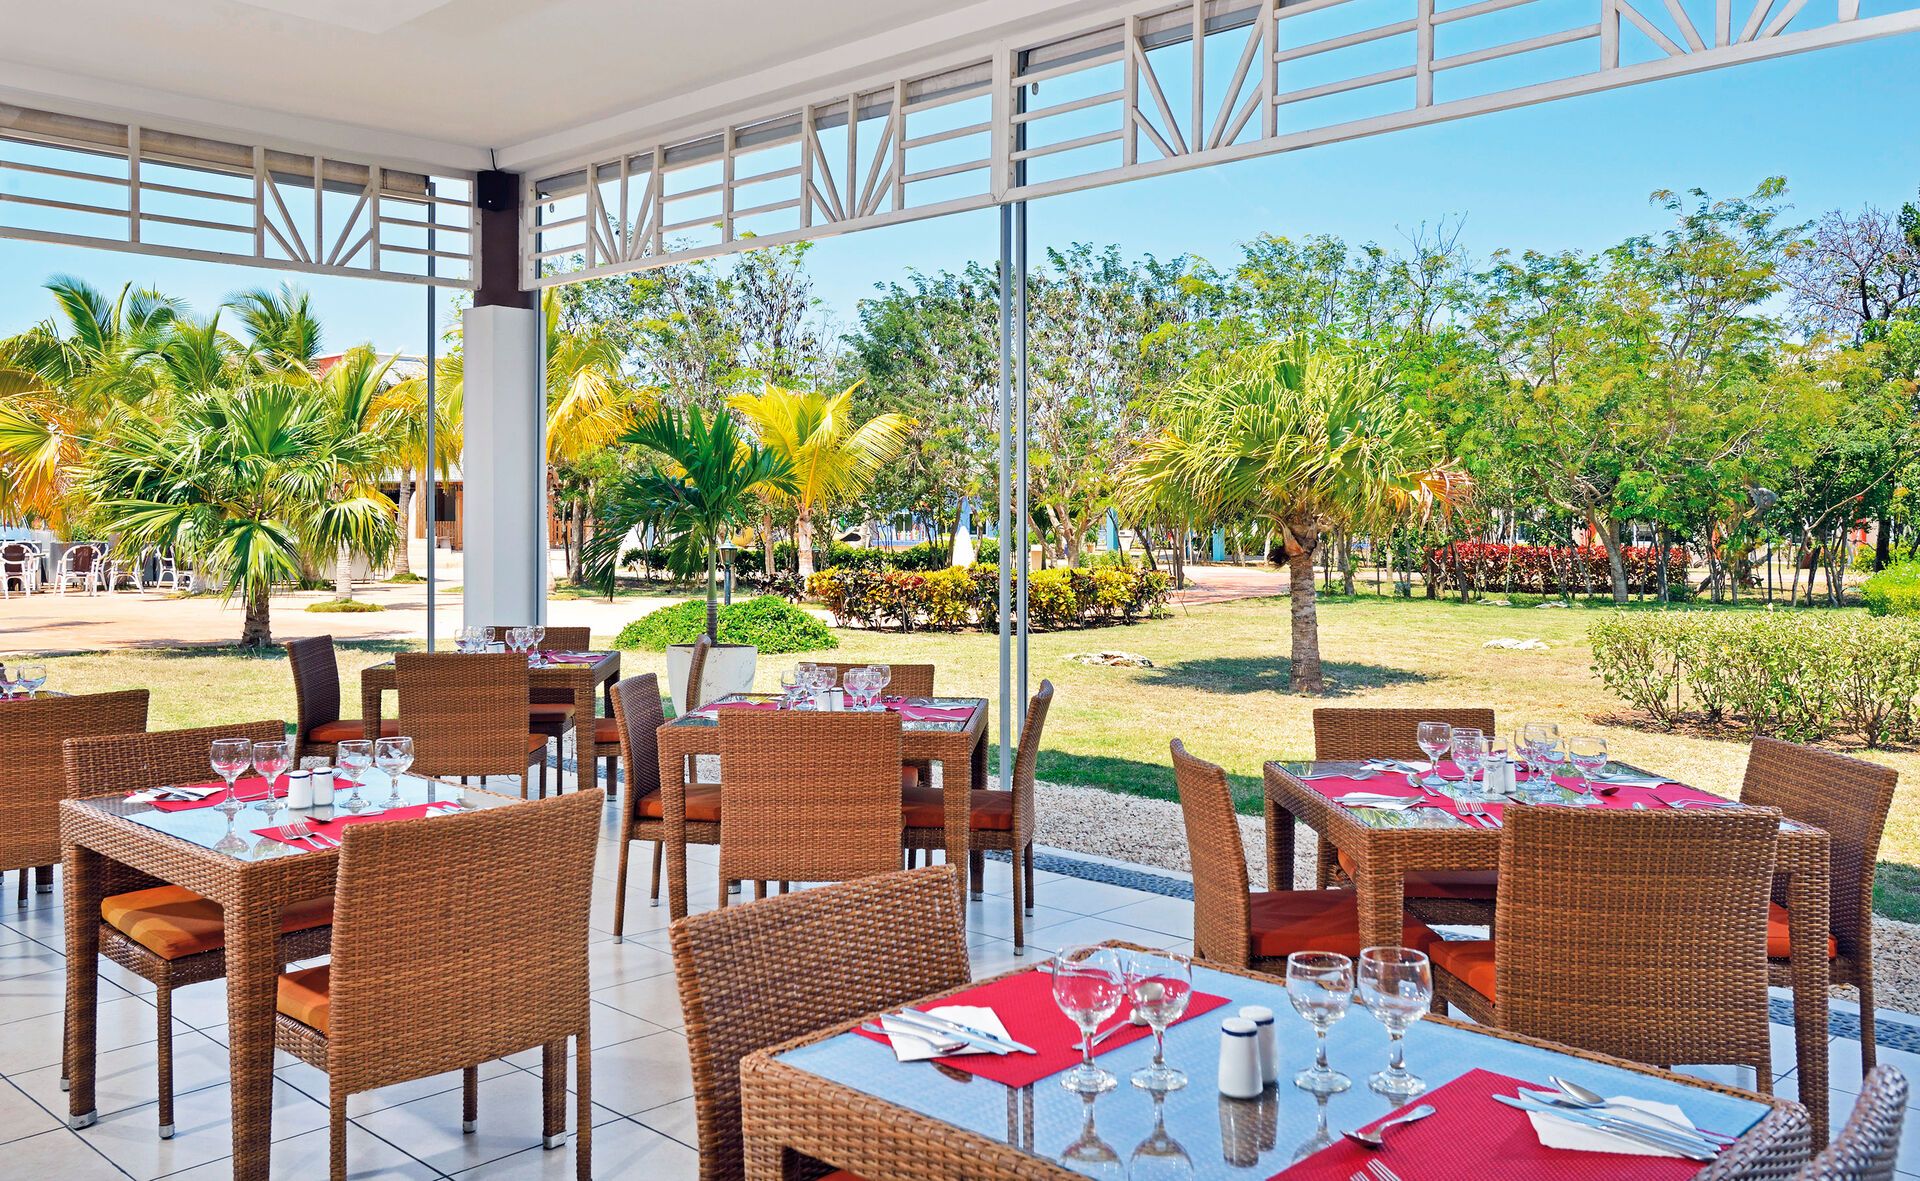 Cuba - Cayo Coco - Hotel Melia Jardines del Rey 5*